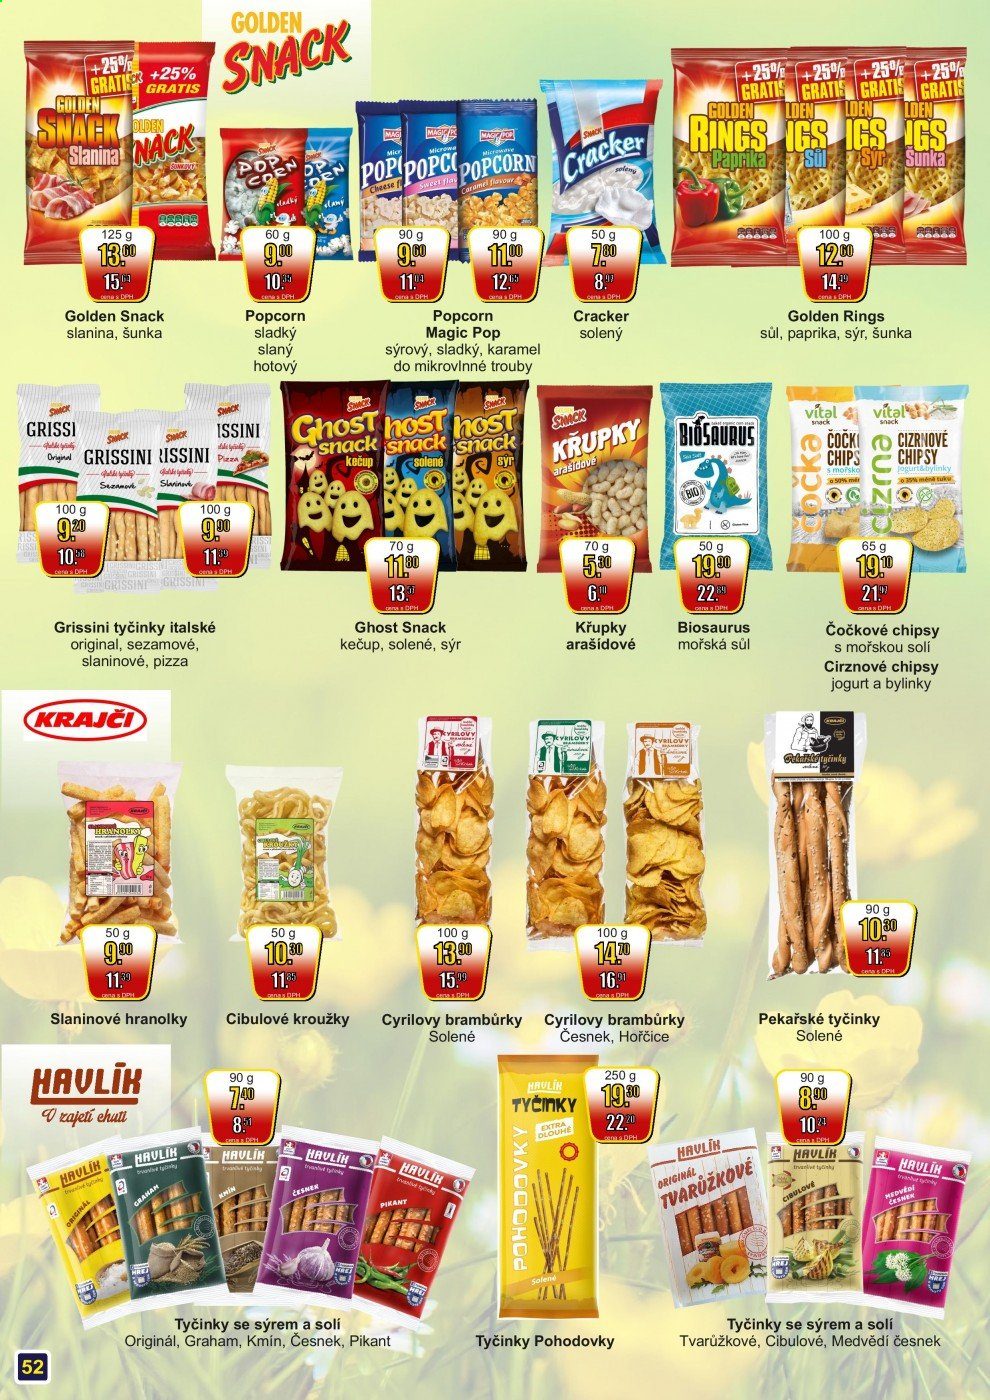 thumbnail - Leták Adam velkoobchod Šternberk - 1.5.2021 - 31.5.2021 - Produkty v akci - medvědí česnek, šunka, pizza, jogurt, cibulové kroužky, hranolky, brambůrky, křupky, slané tyčinky, tyčinky sýrové, popcorn, křupky arašídové, Biosaurus, Grissini, Golden Snack, chipsy, cracker, slaný snack, italské tyčinky, kmín. Strana 52.